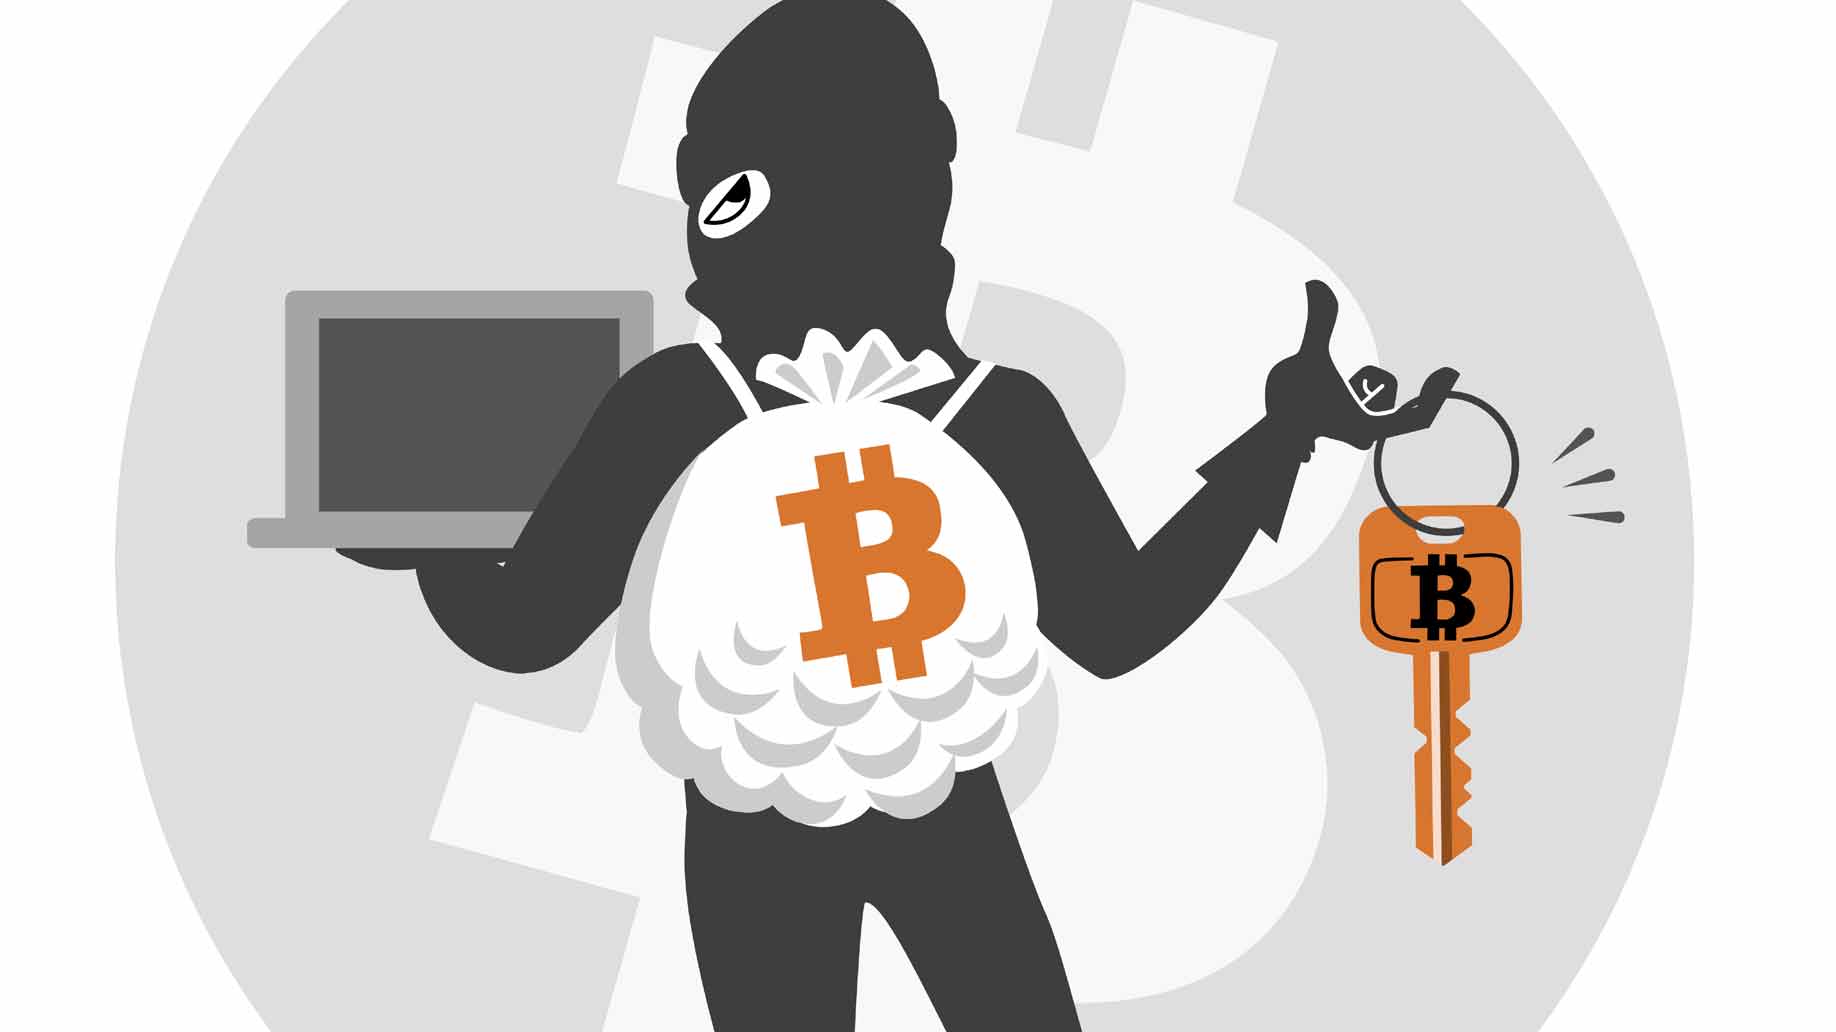 se ve un ladrón sosteniendo una computadora y una llave con una B de Bitcoin y en su espalda leva una bolsa llena de bitcoin